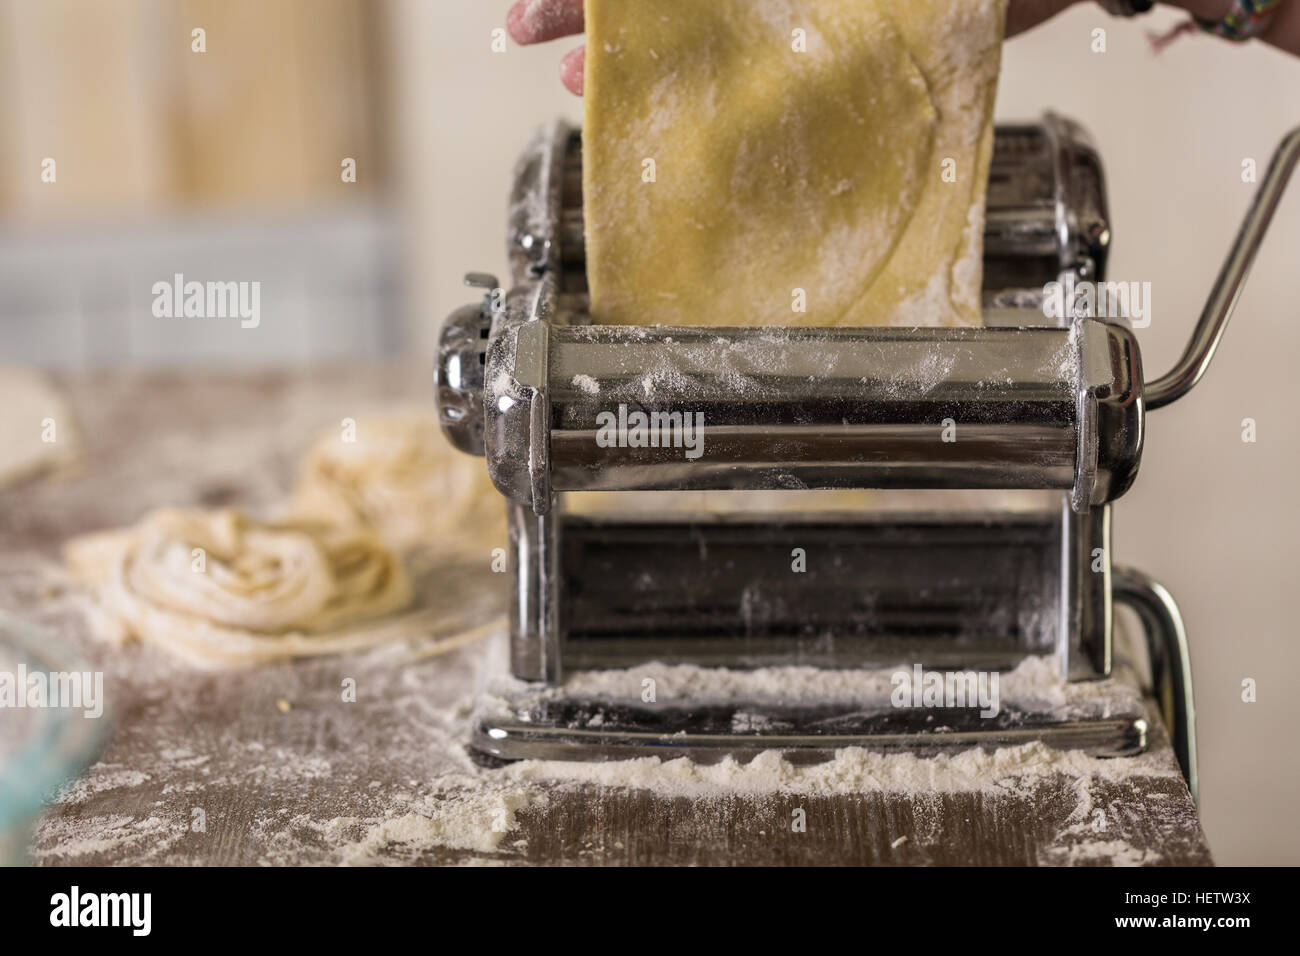 https://c8.alamy.com/comp/HETW3X/preparing-home-made-pasta-with-pasta-maker-HETW3X.jpg